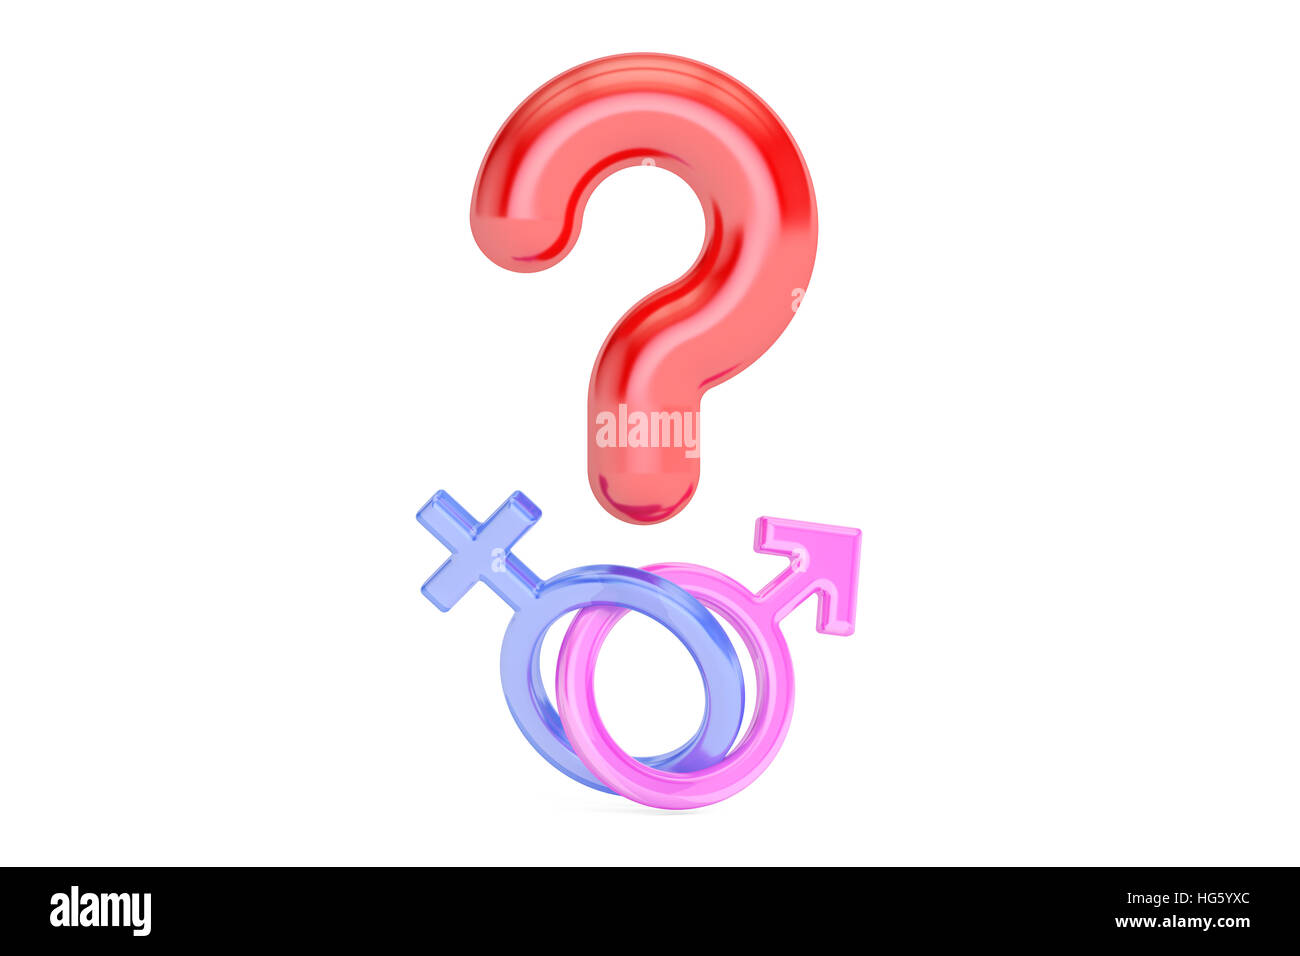 Signo de interrogación con el género masculino y femenino , símbolos 3D rendering aislado sobre fondo blanco. Foto de stock